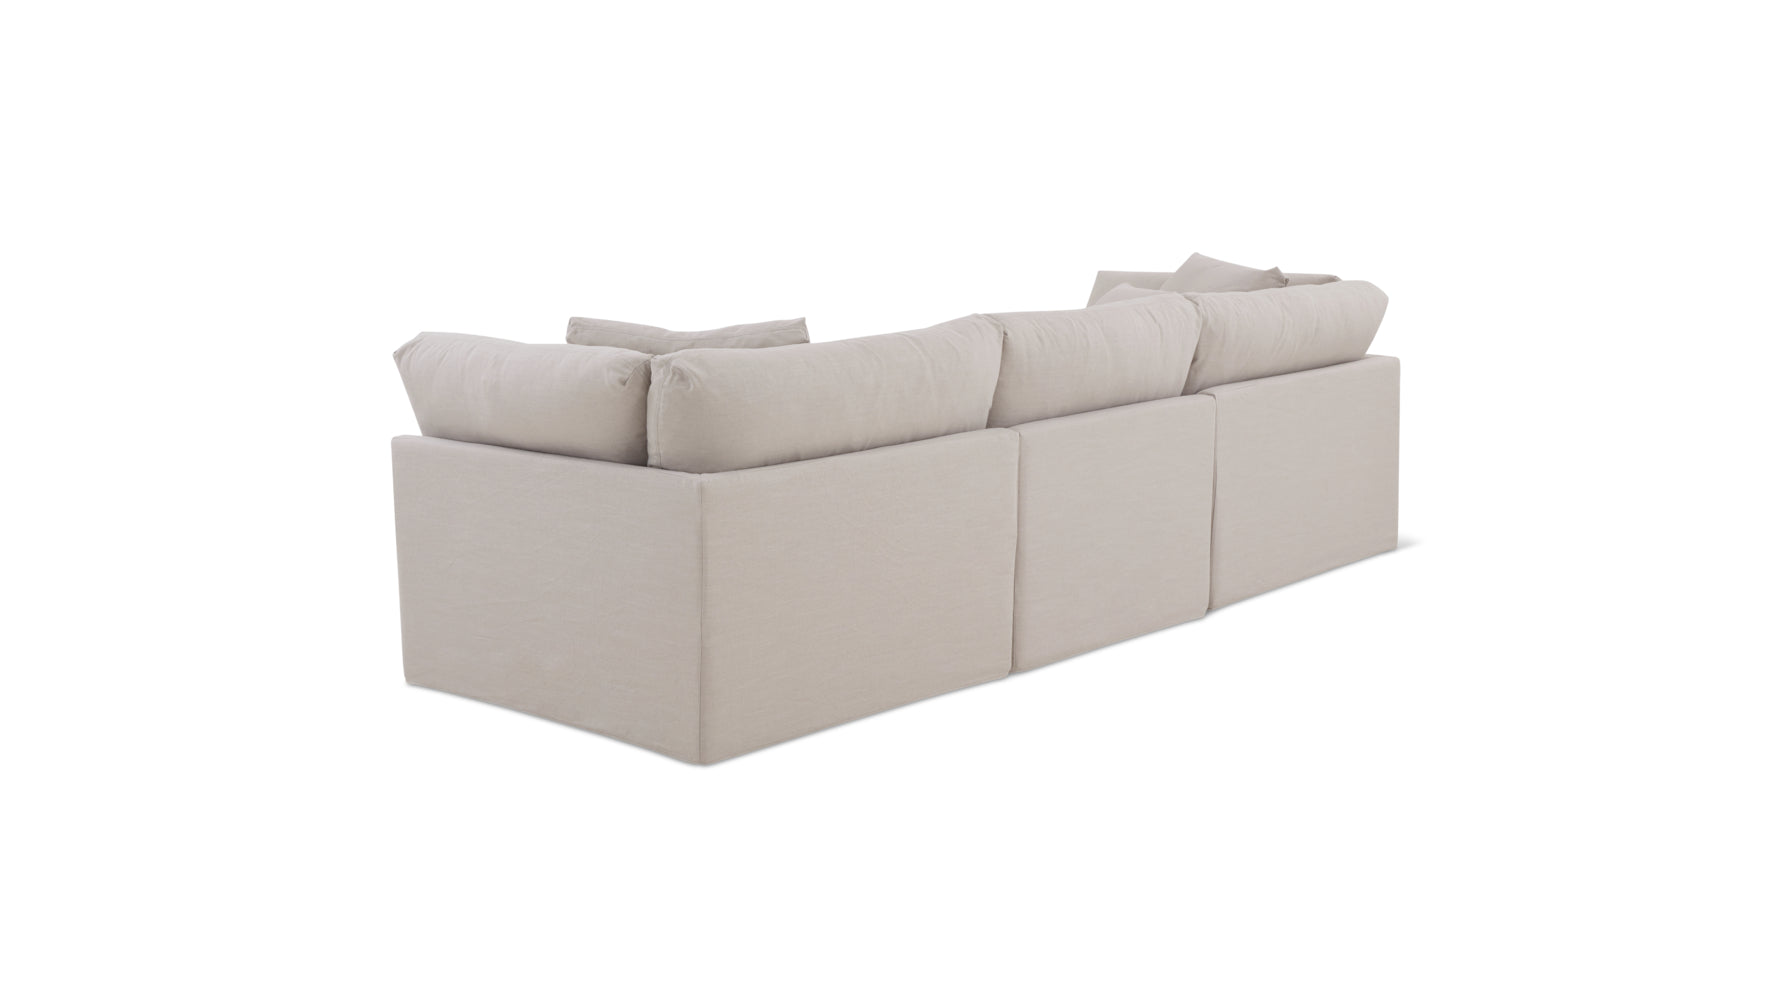 Get Together™ 3-Piece Modular Sofa, Large, Clay - Image 10